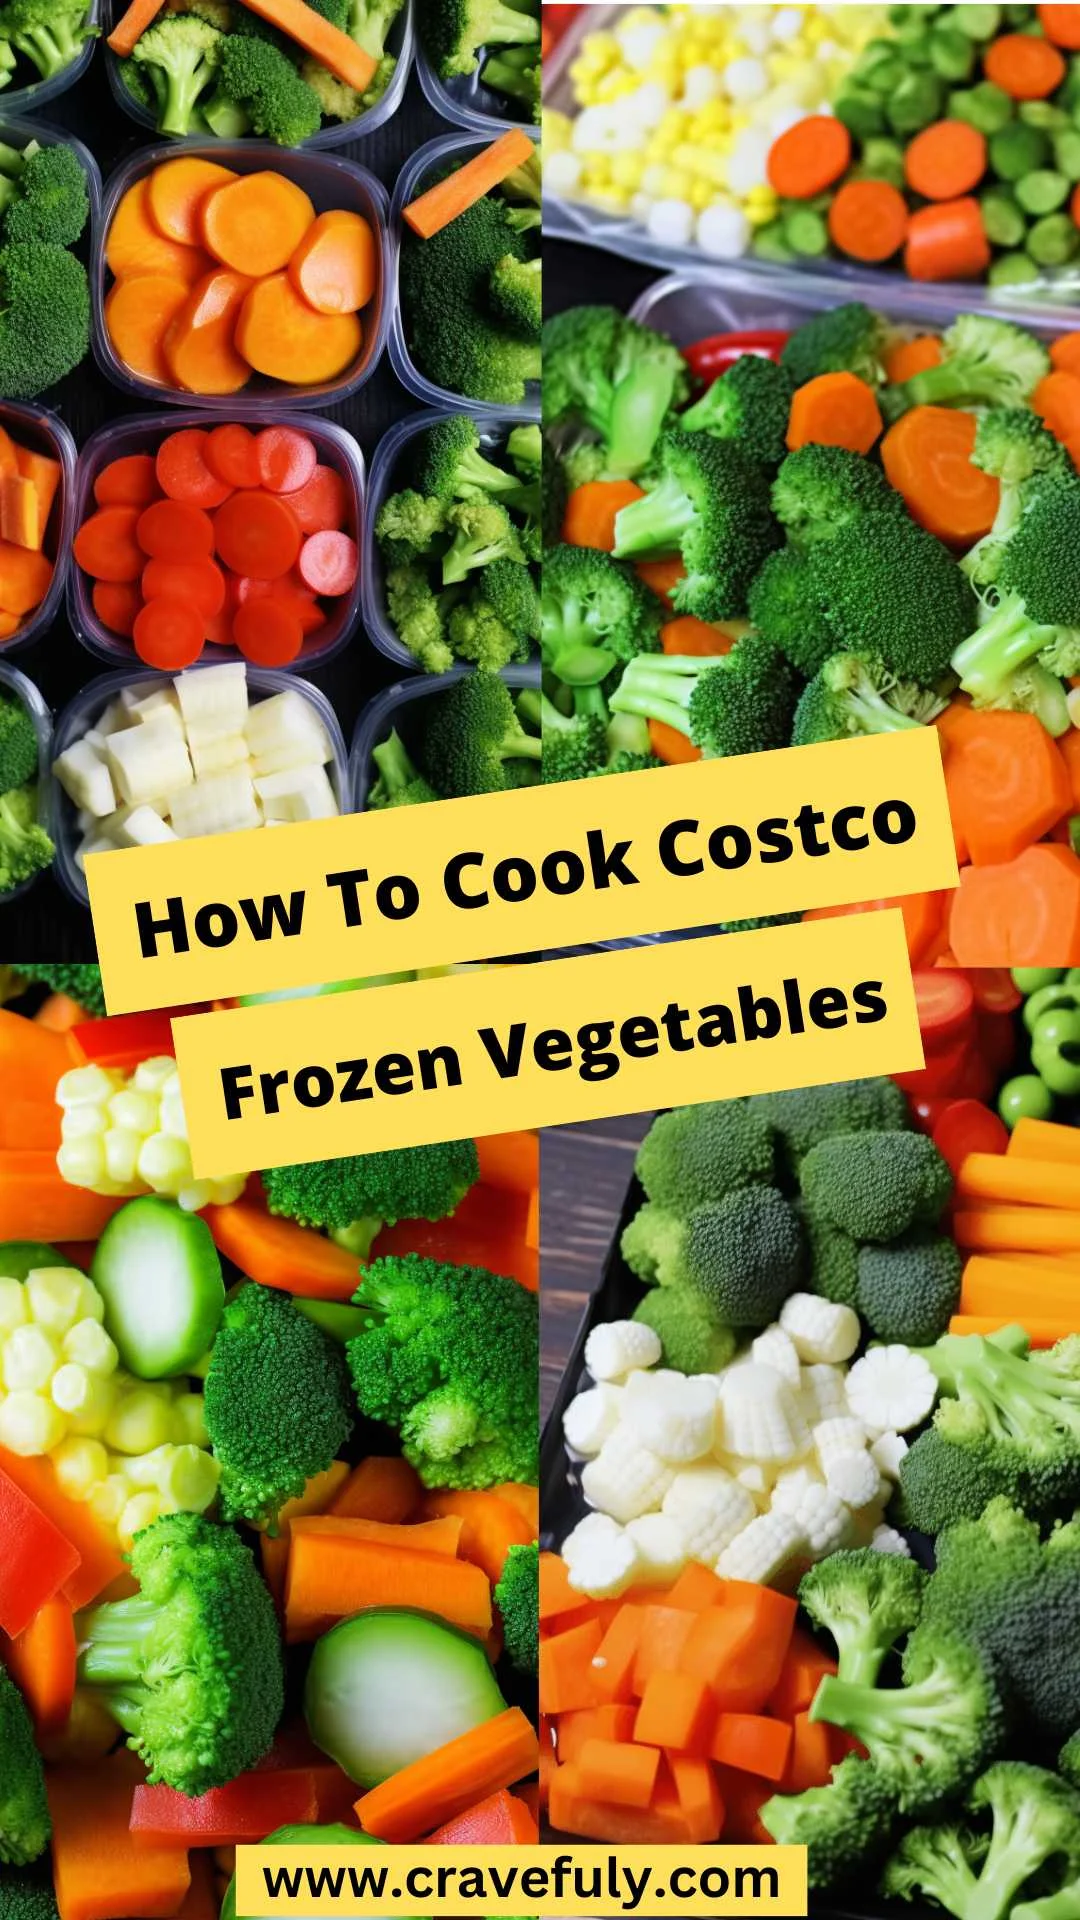 How To Cook Costco Frozen Vegetables